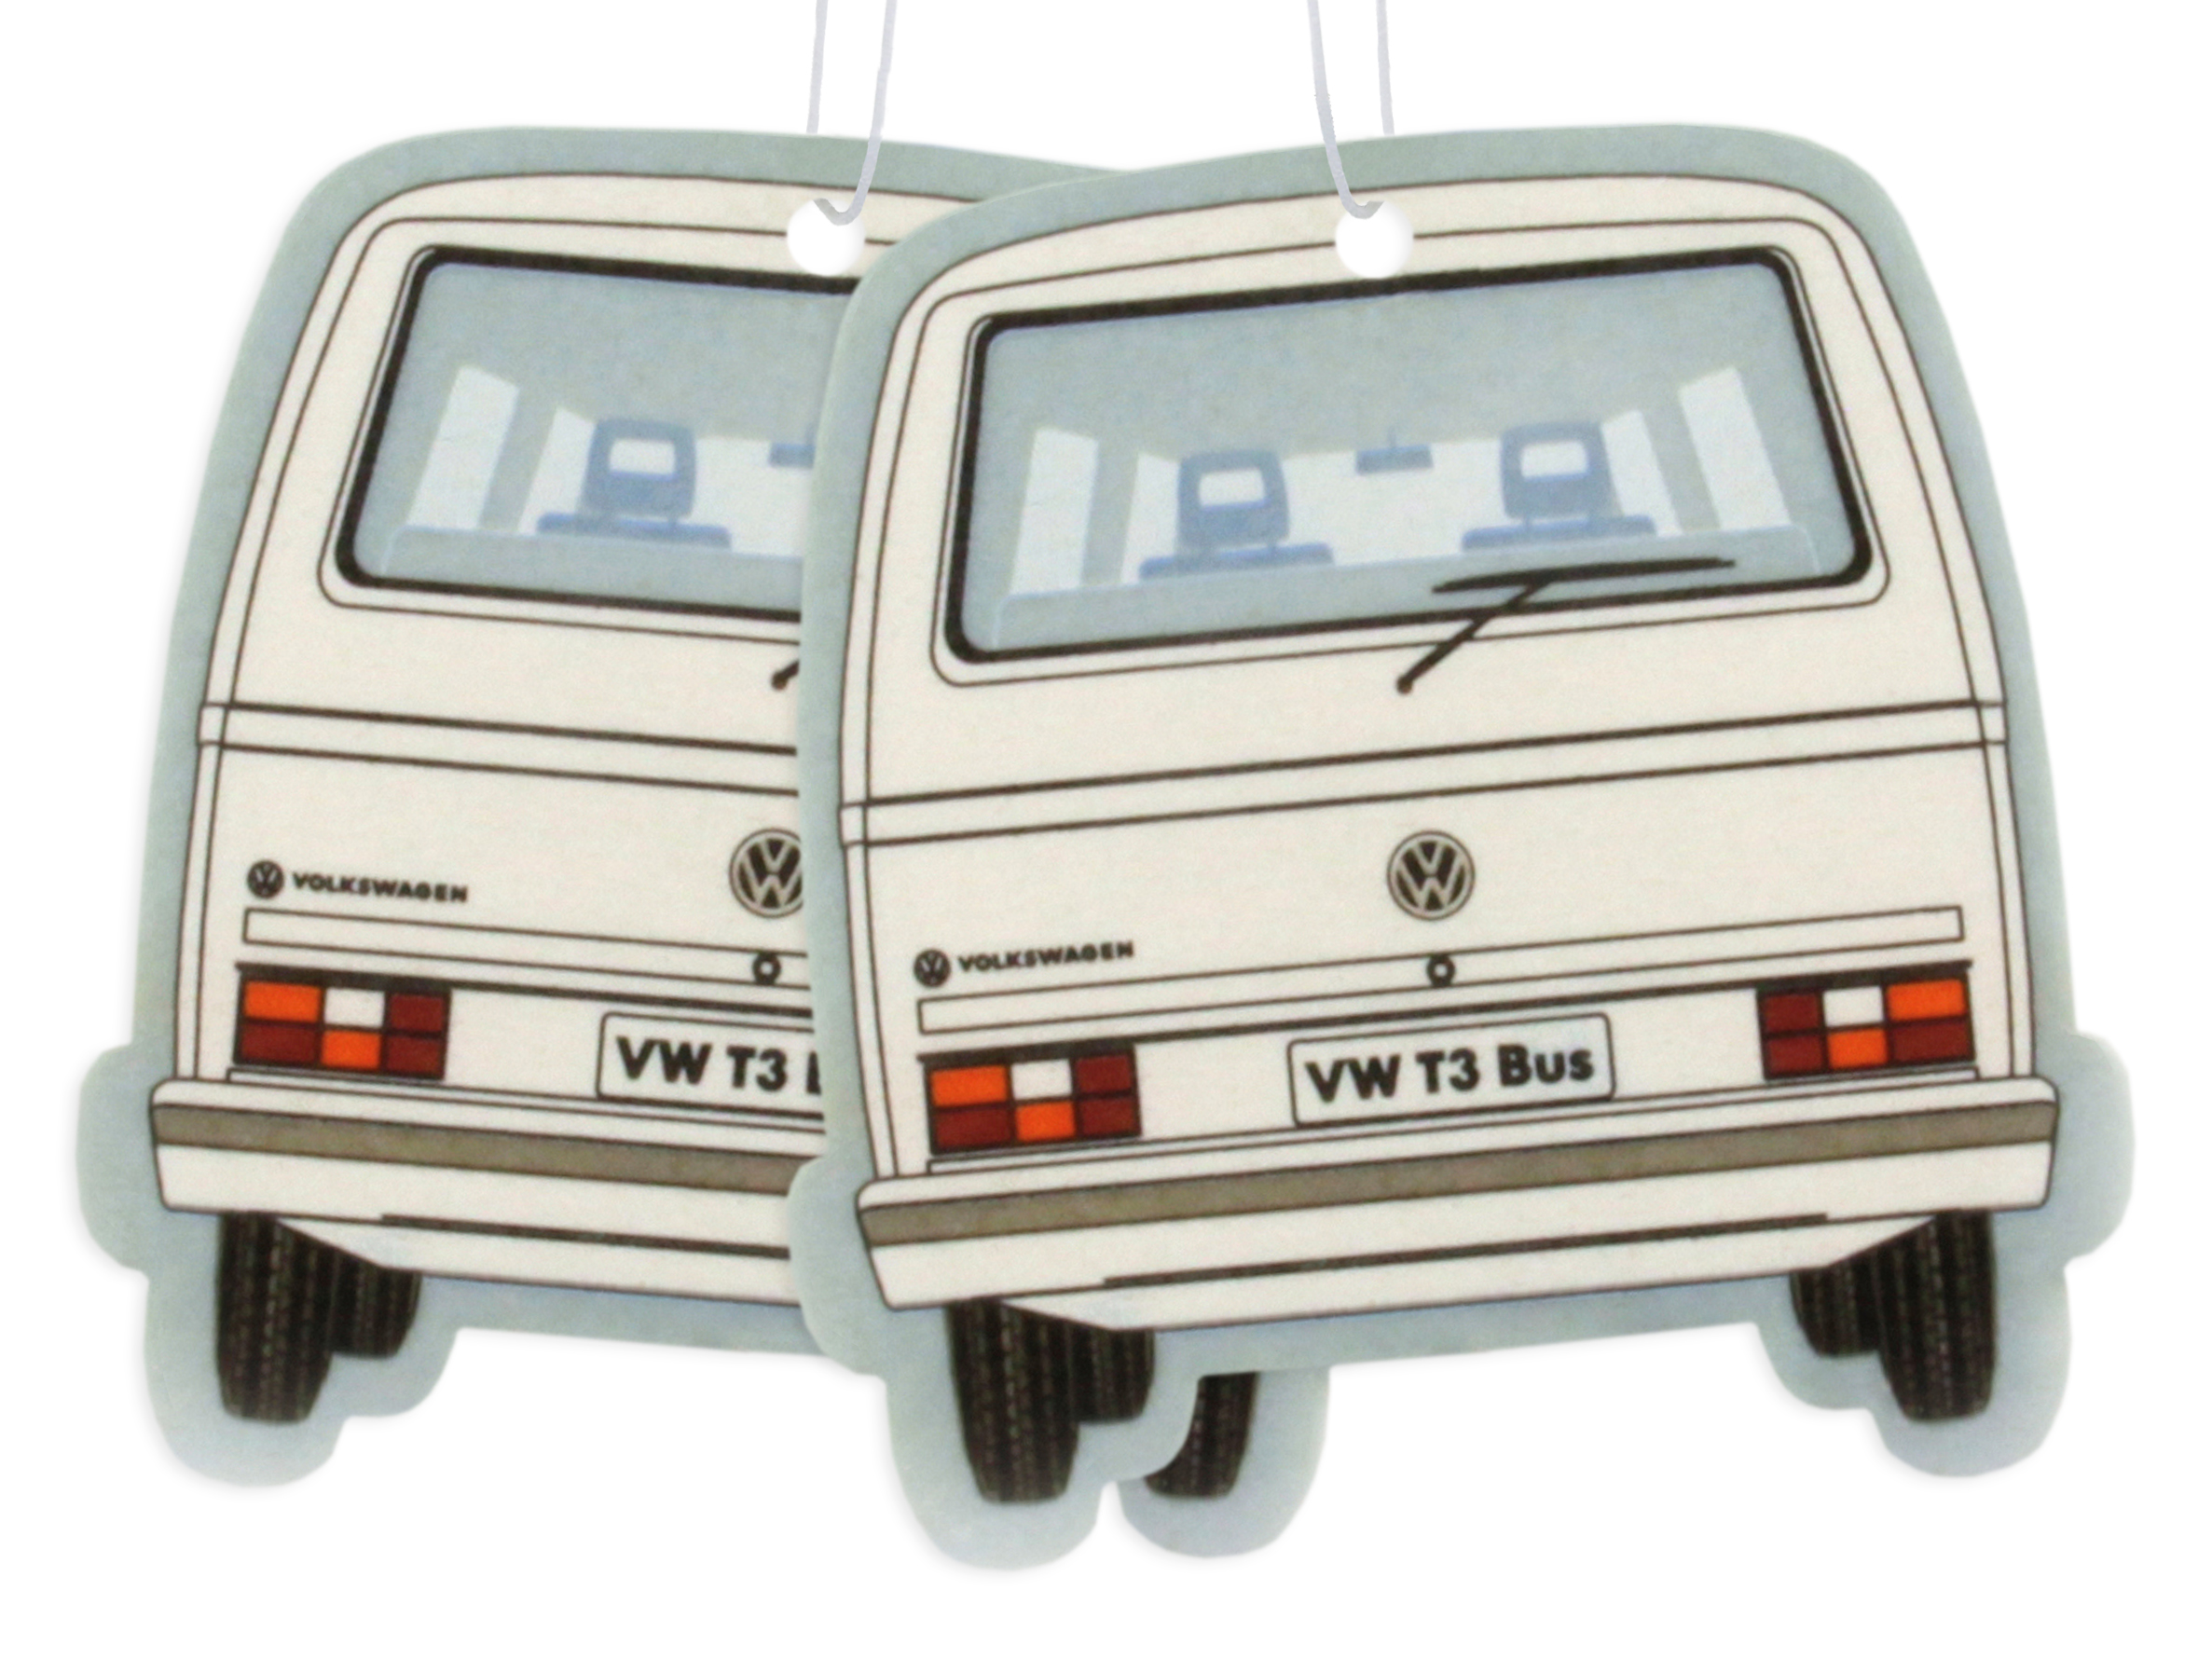 Set of 2 Volkswagen air fresheners - various designs